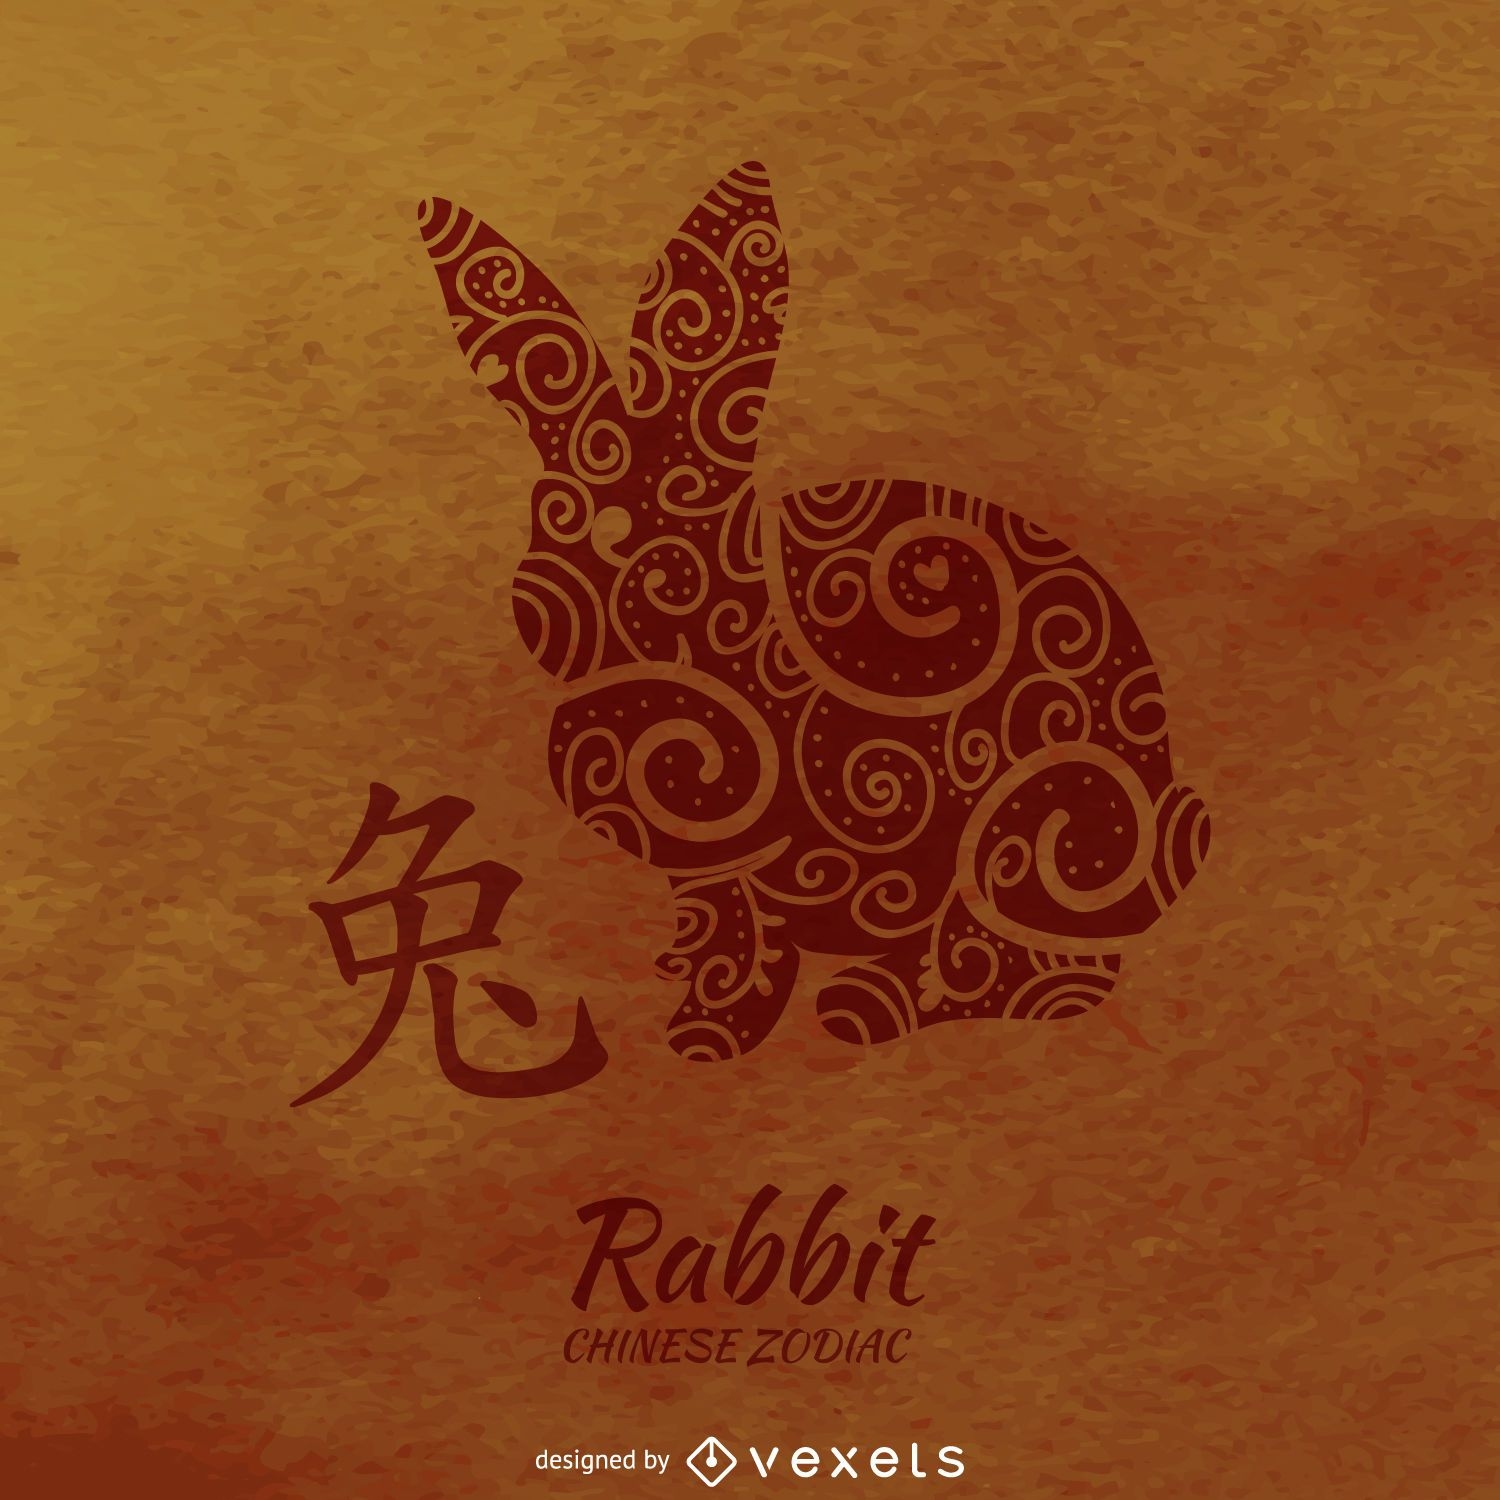 Chinesisches Horoskop der Kaninchenzeichnung